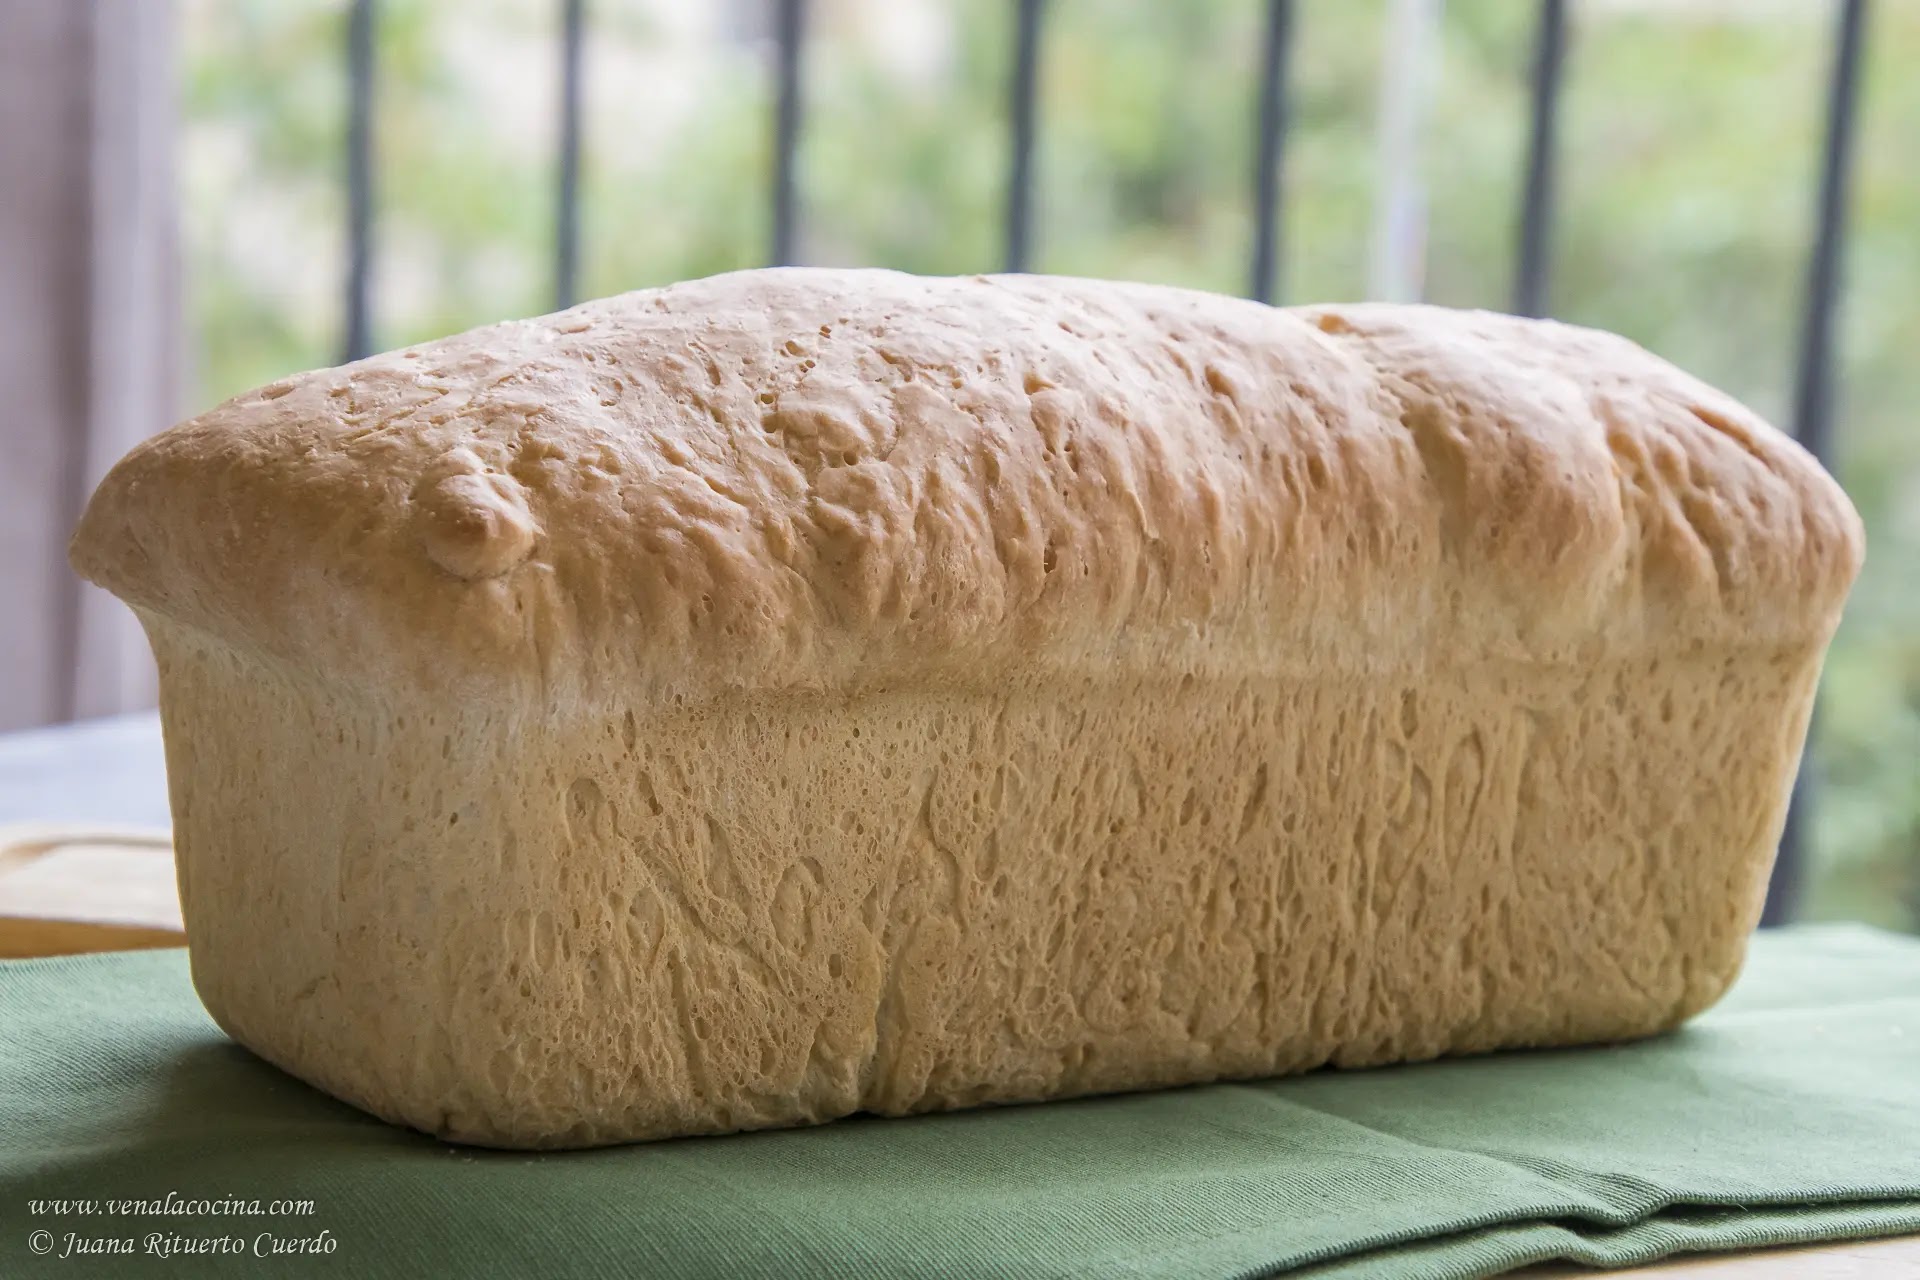 Pan de molde casero con aceite de oliva. Receta fácil, saludable y apetitosa